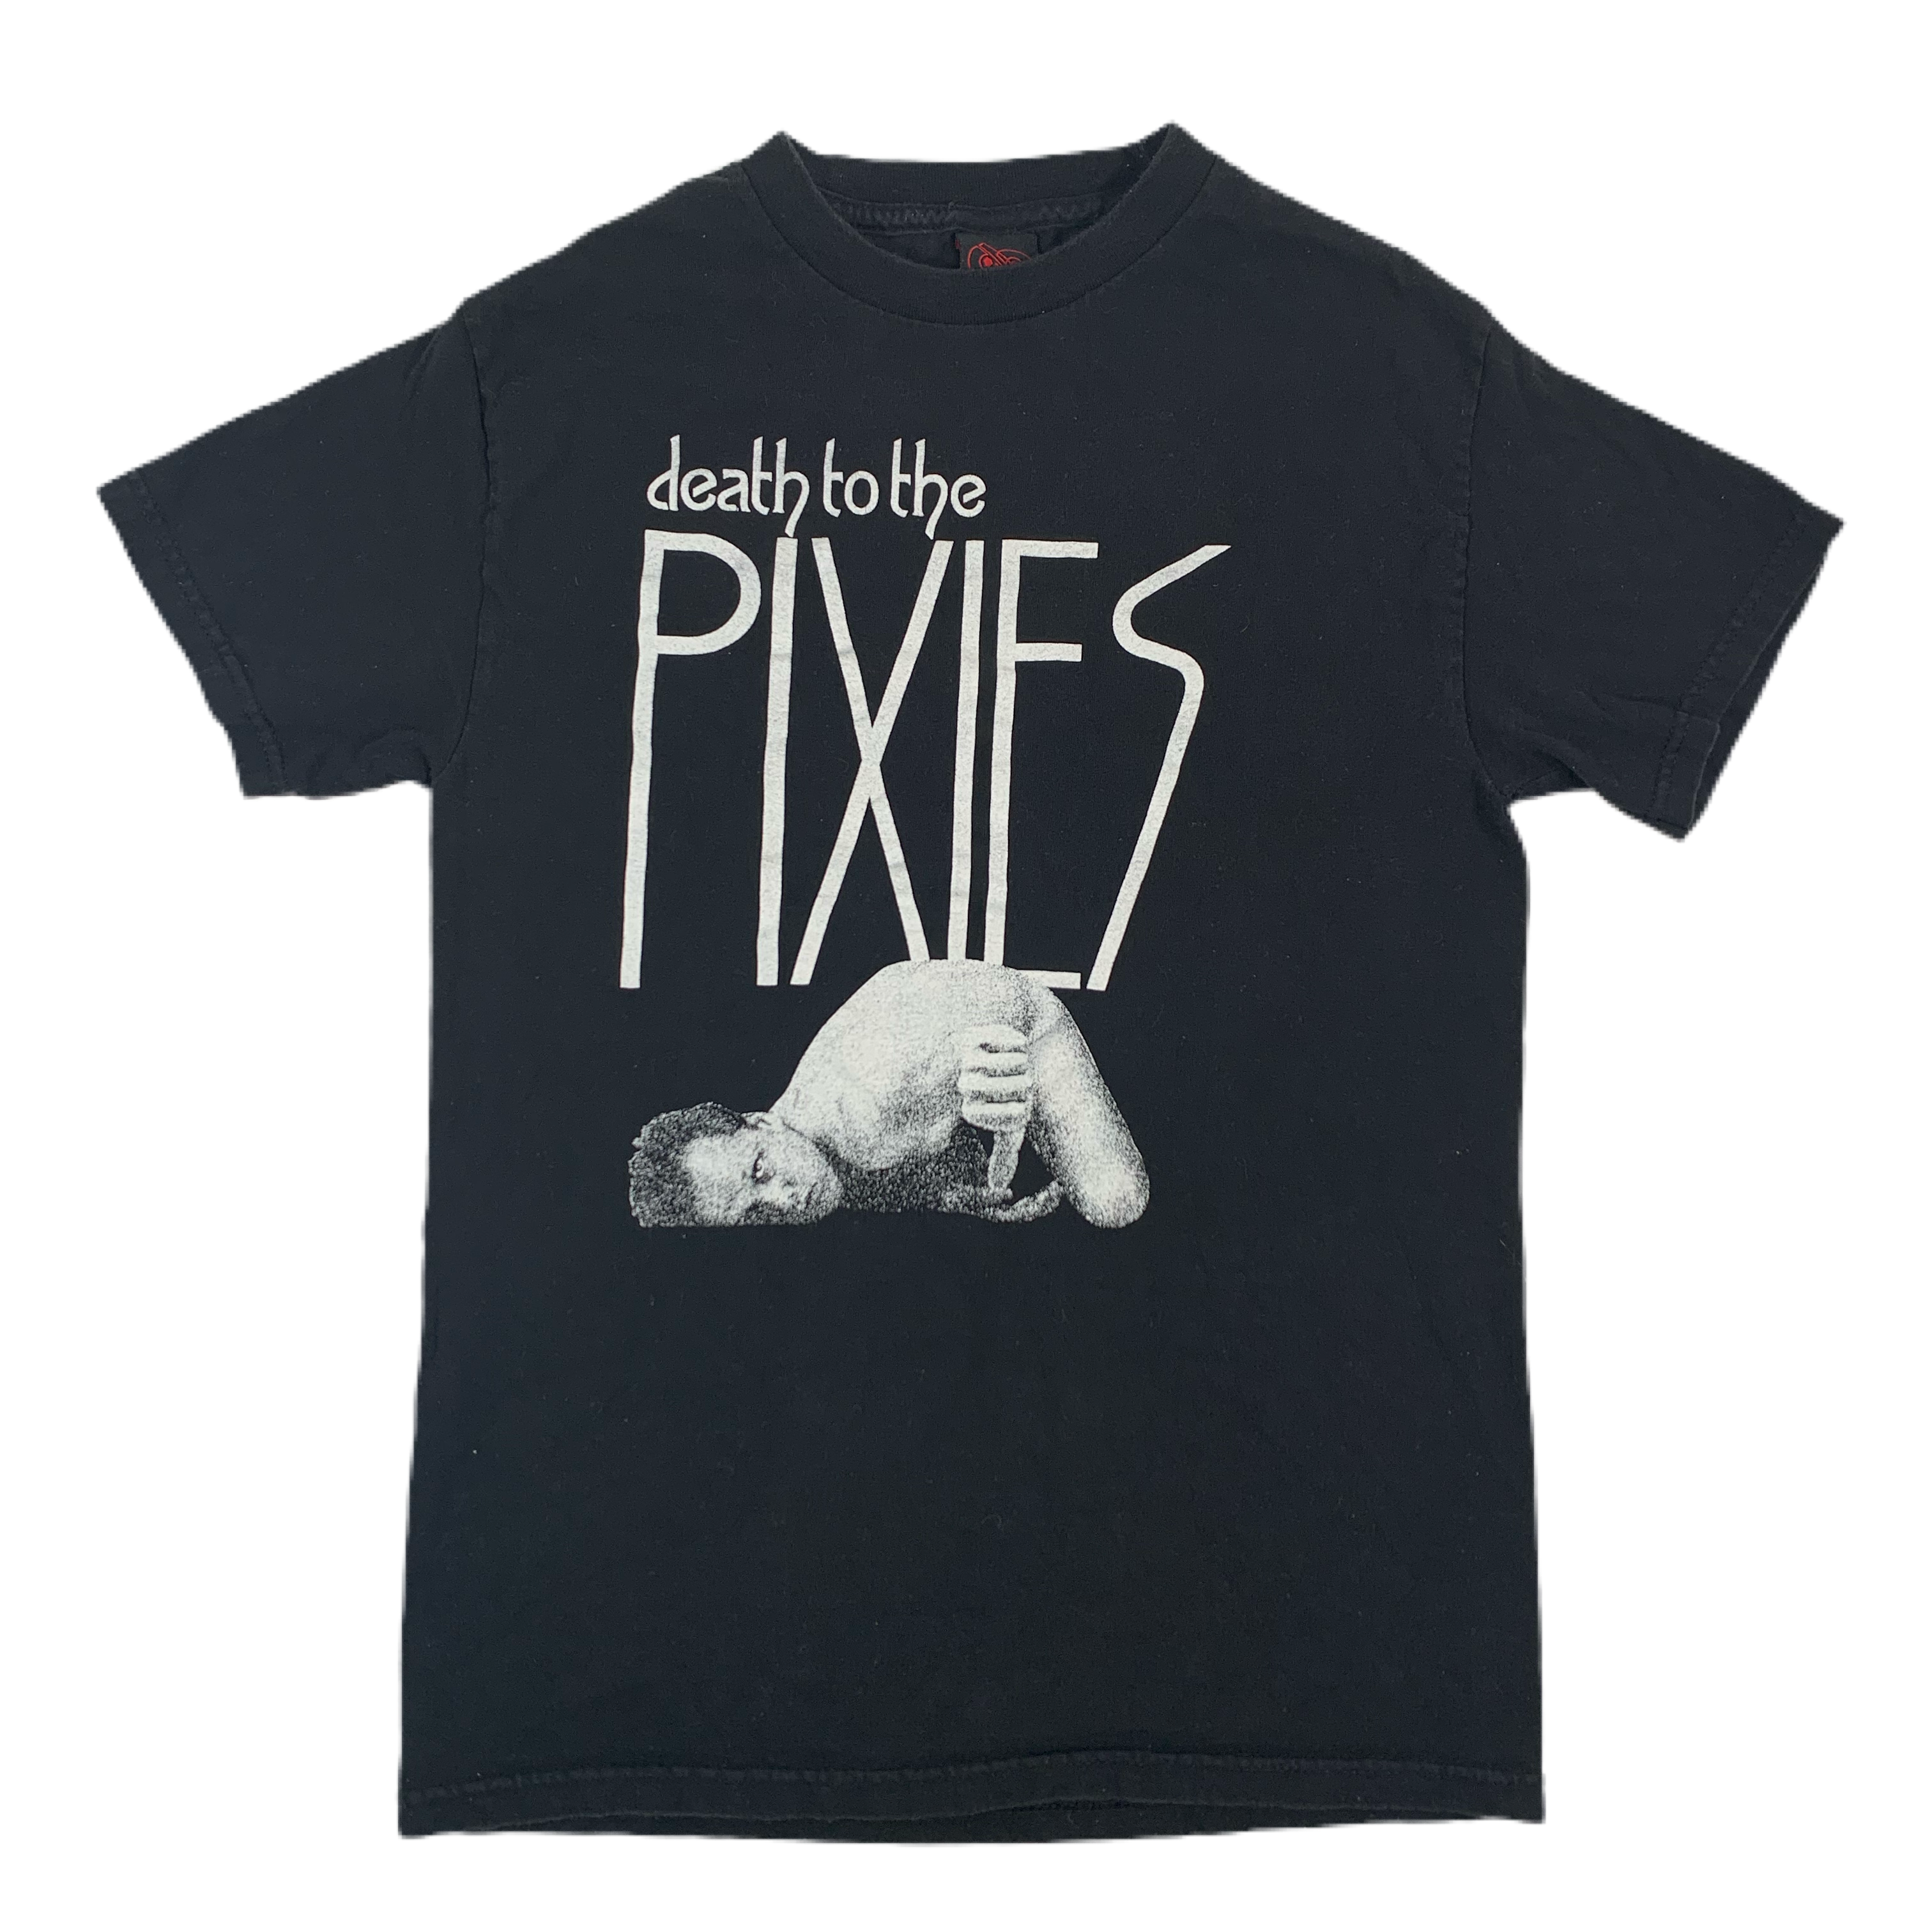 pixies t shirt vintage